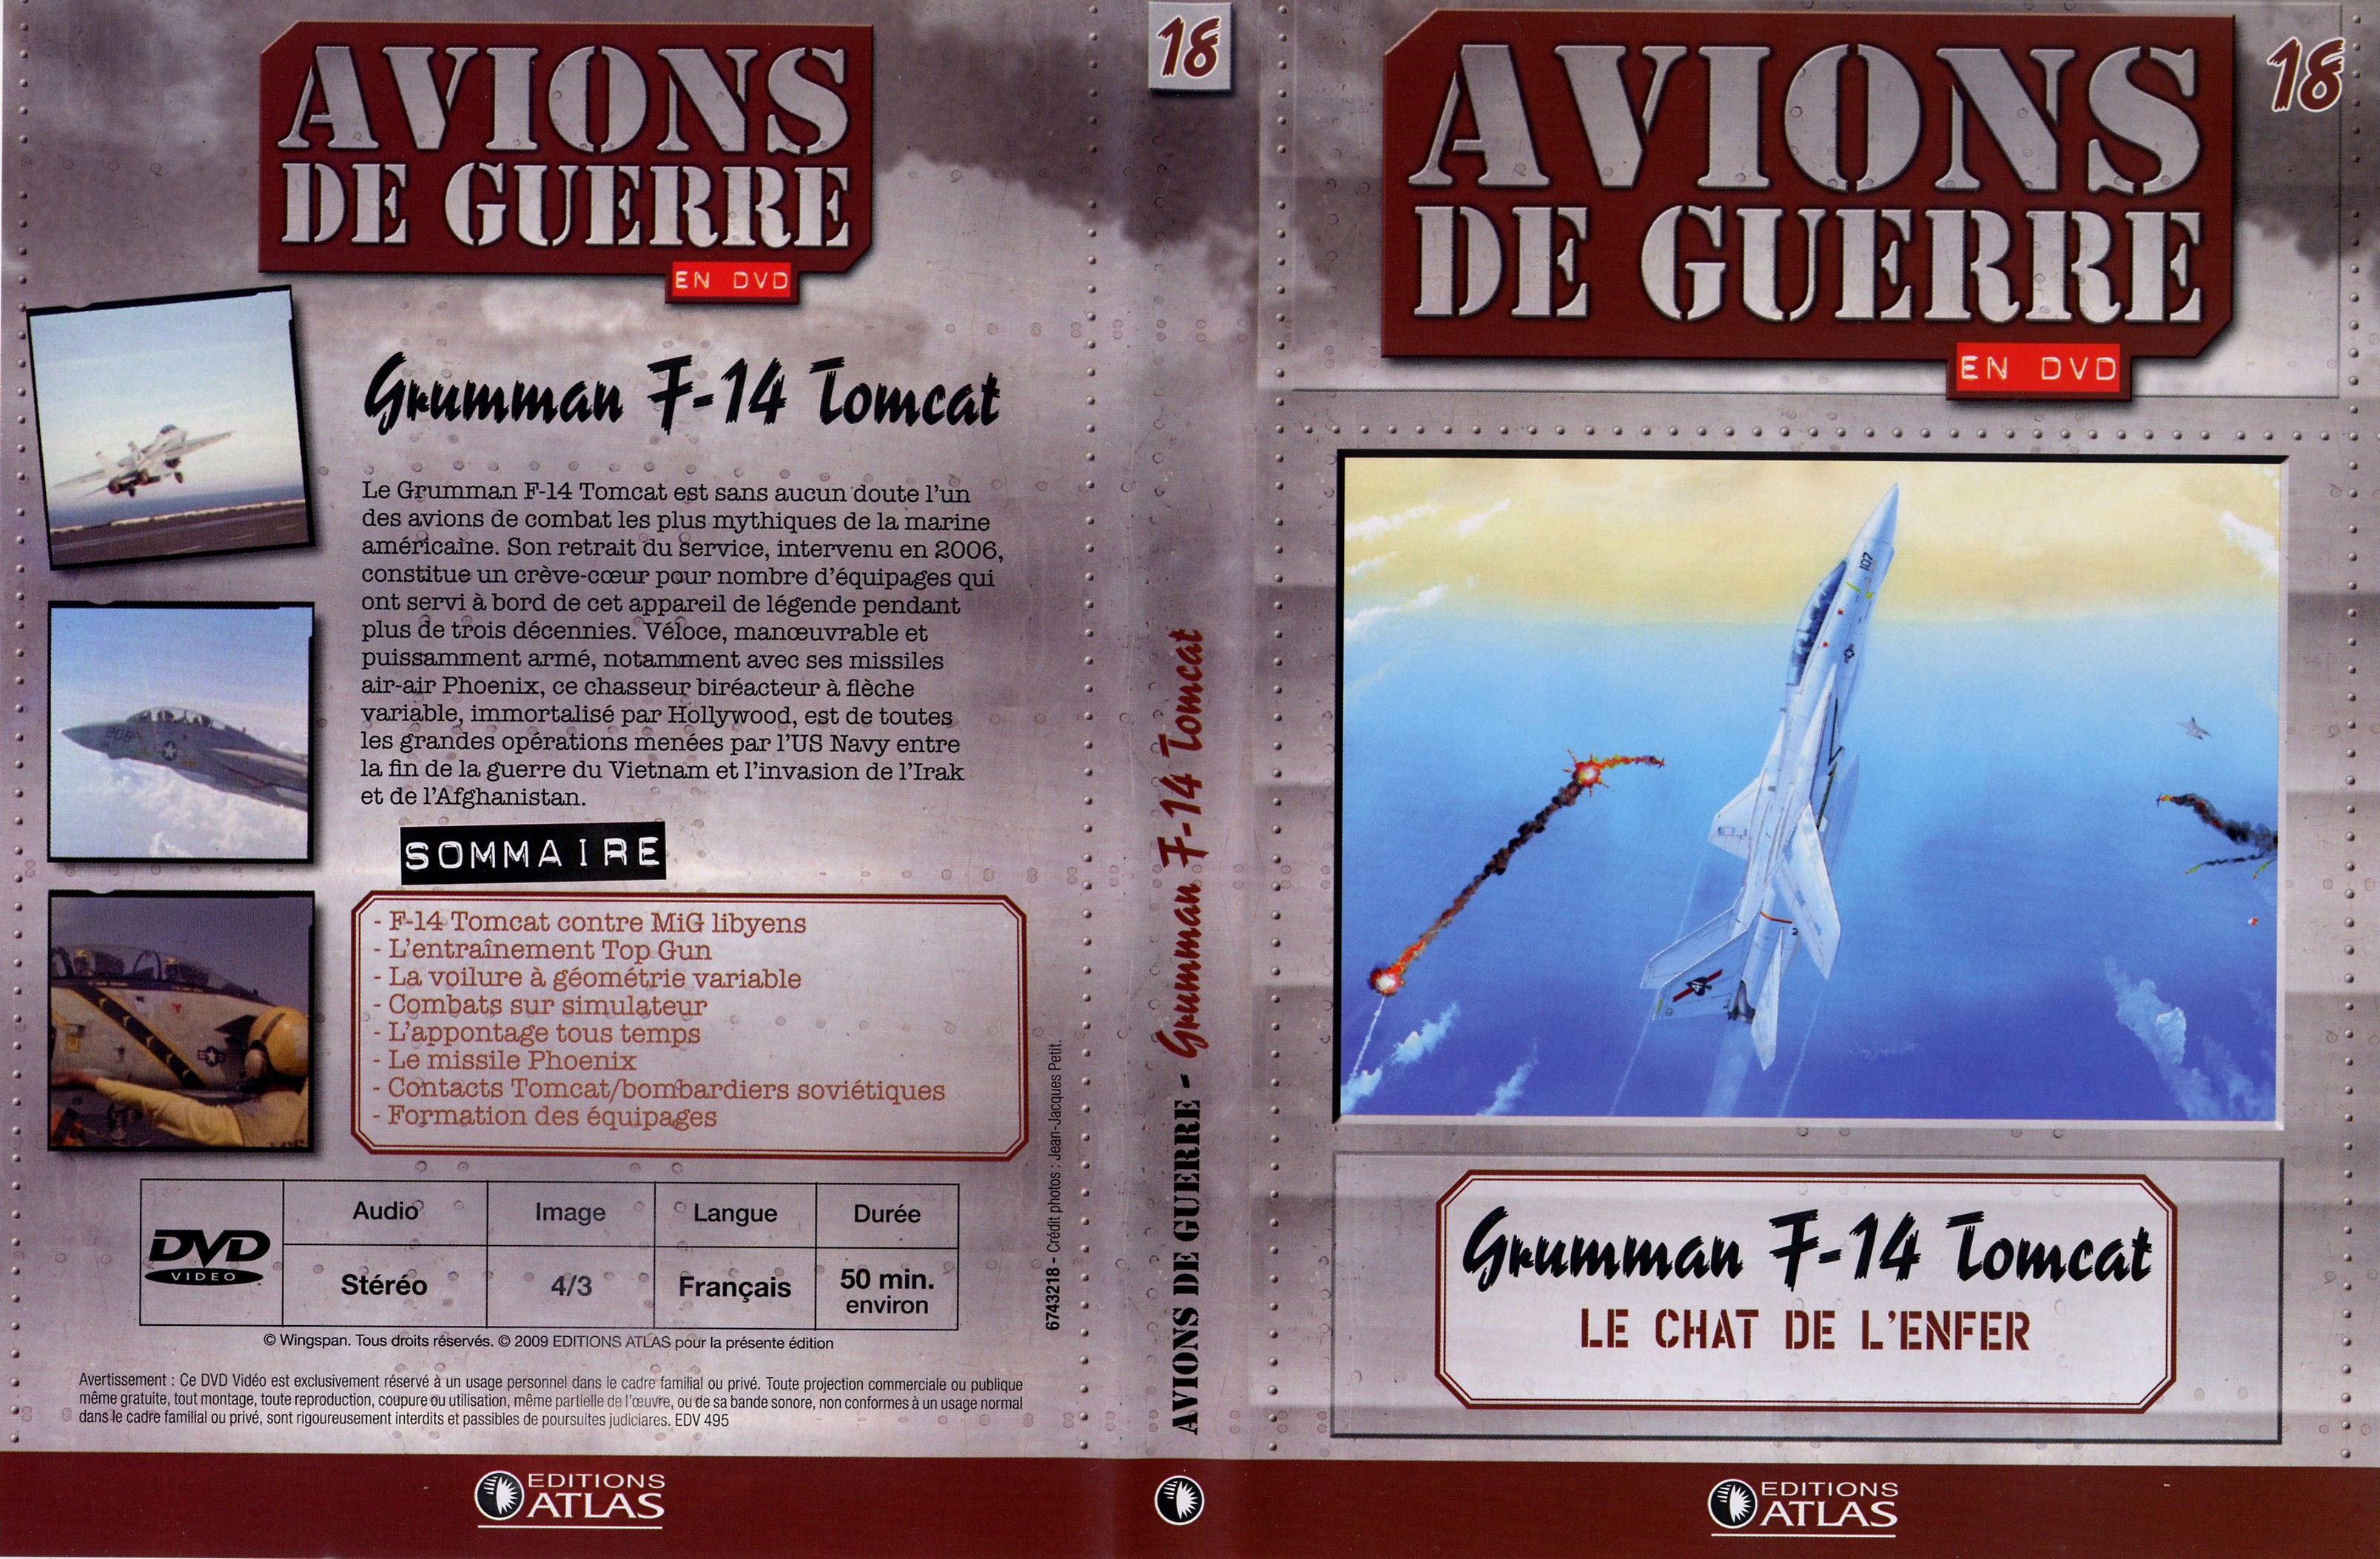 Jaquette DVD Avions de guerre en DVD vol 18